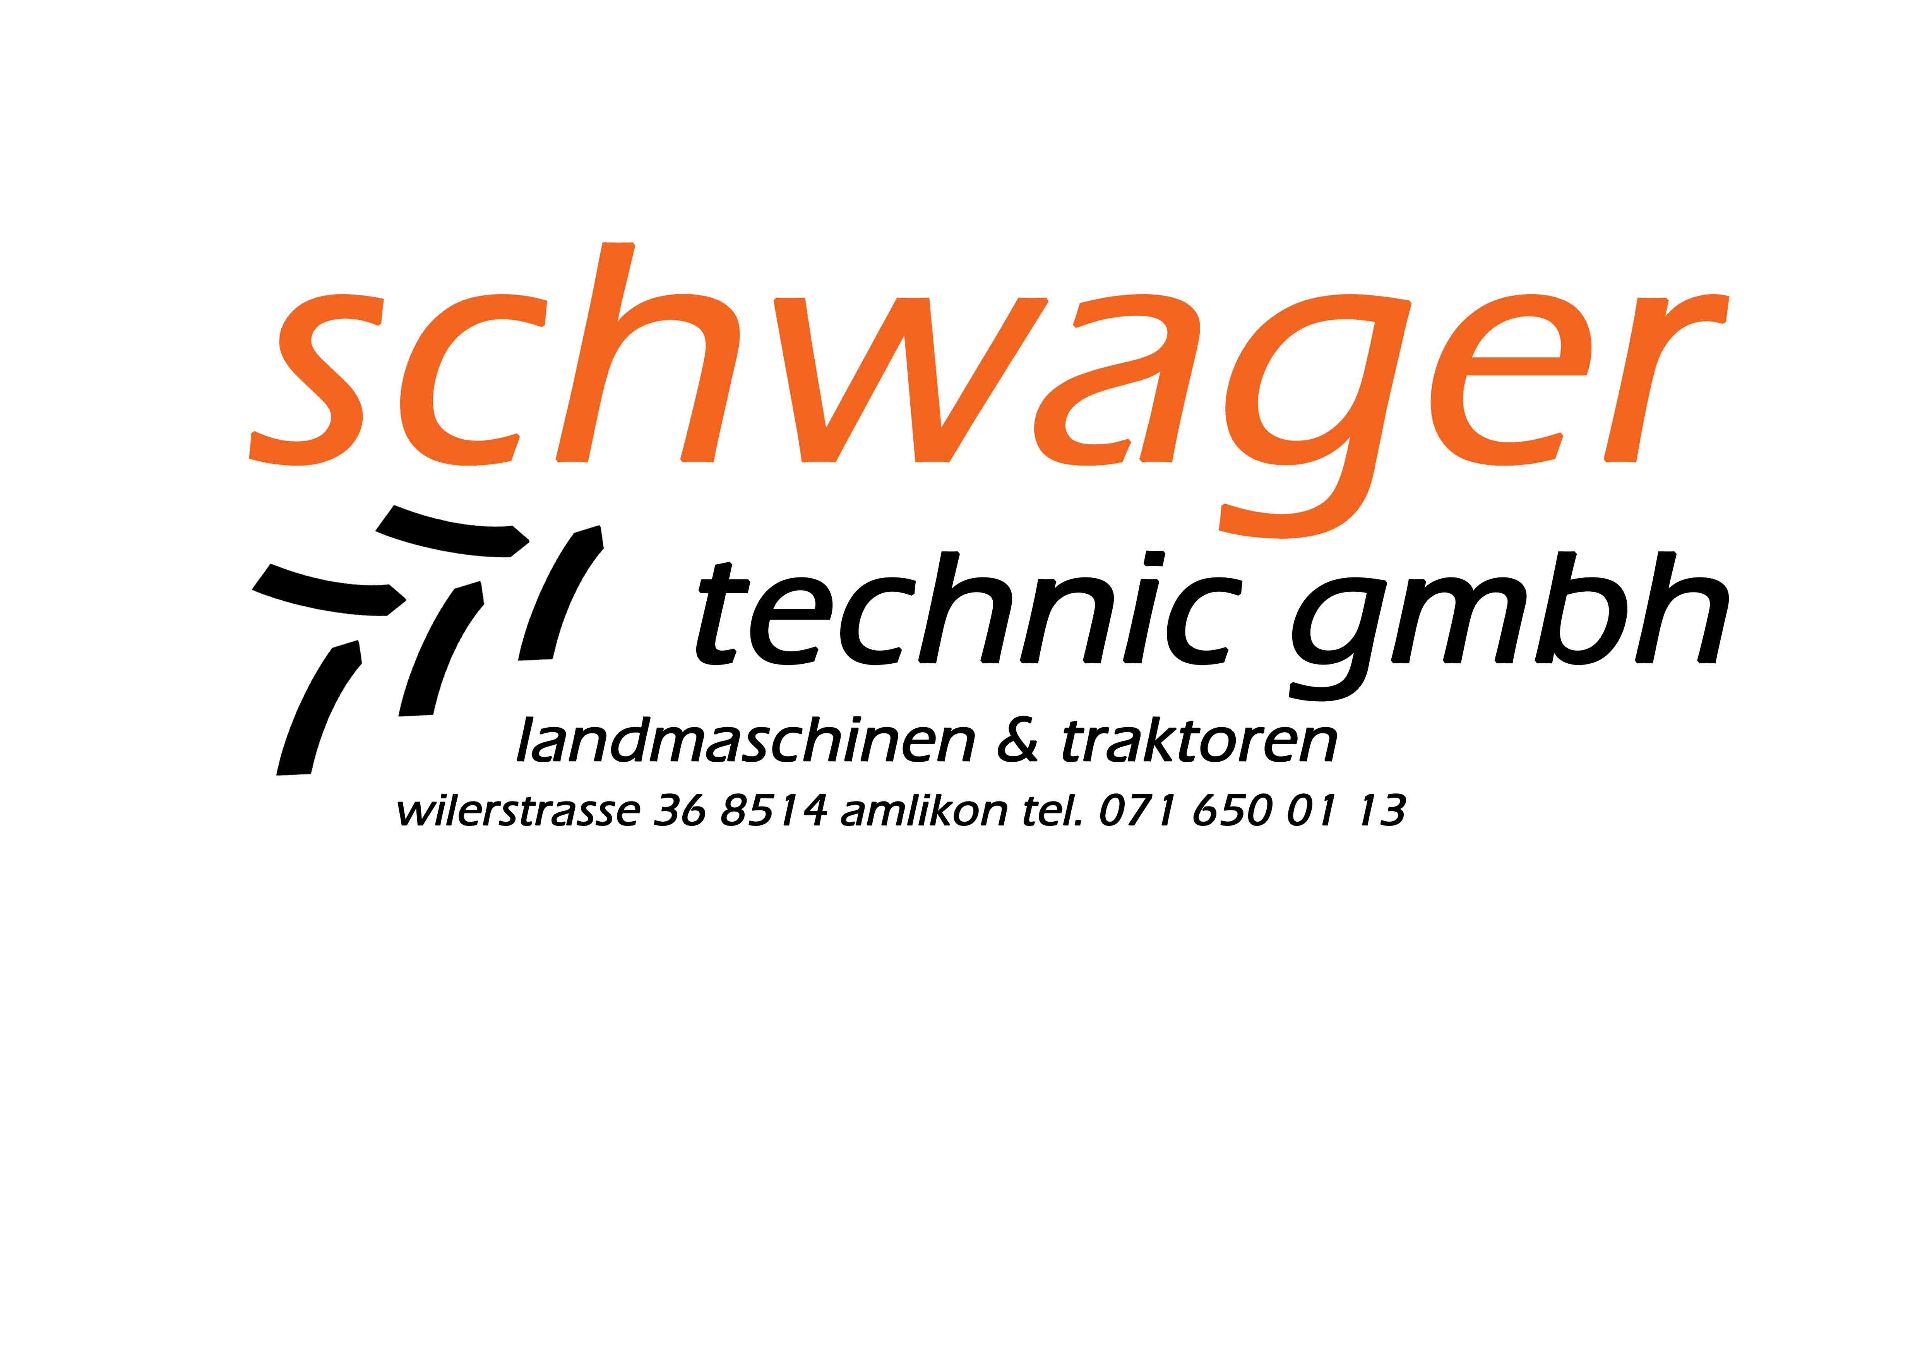 Logo schwager technic gmbh Kleber_bearbeitet-2.jpg